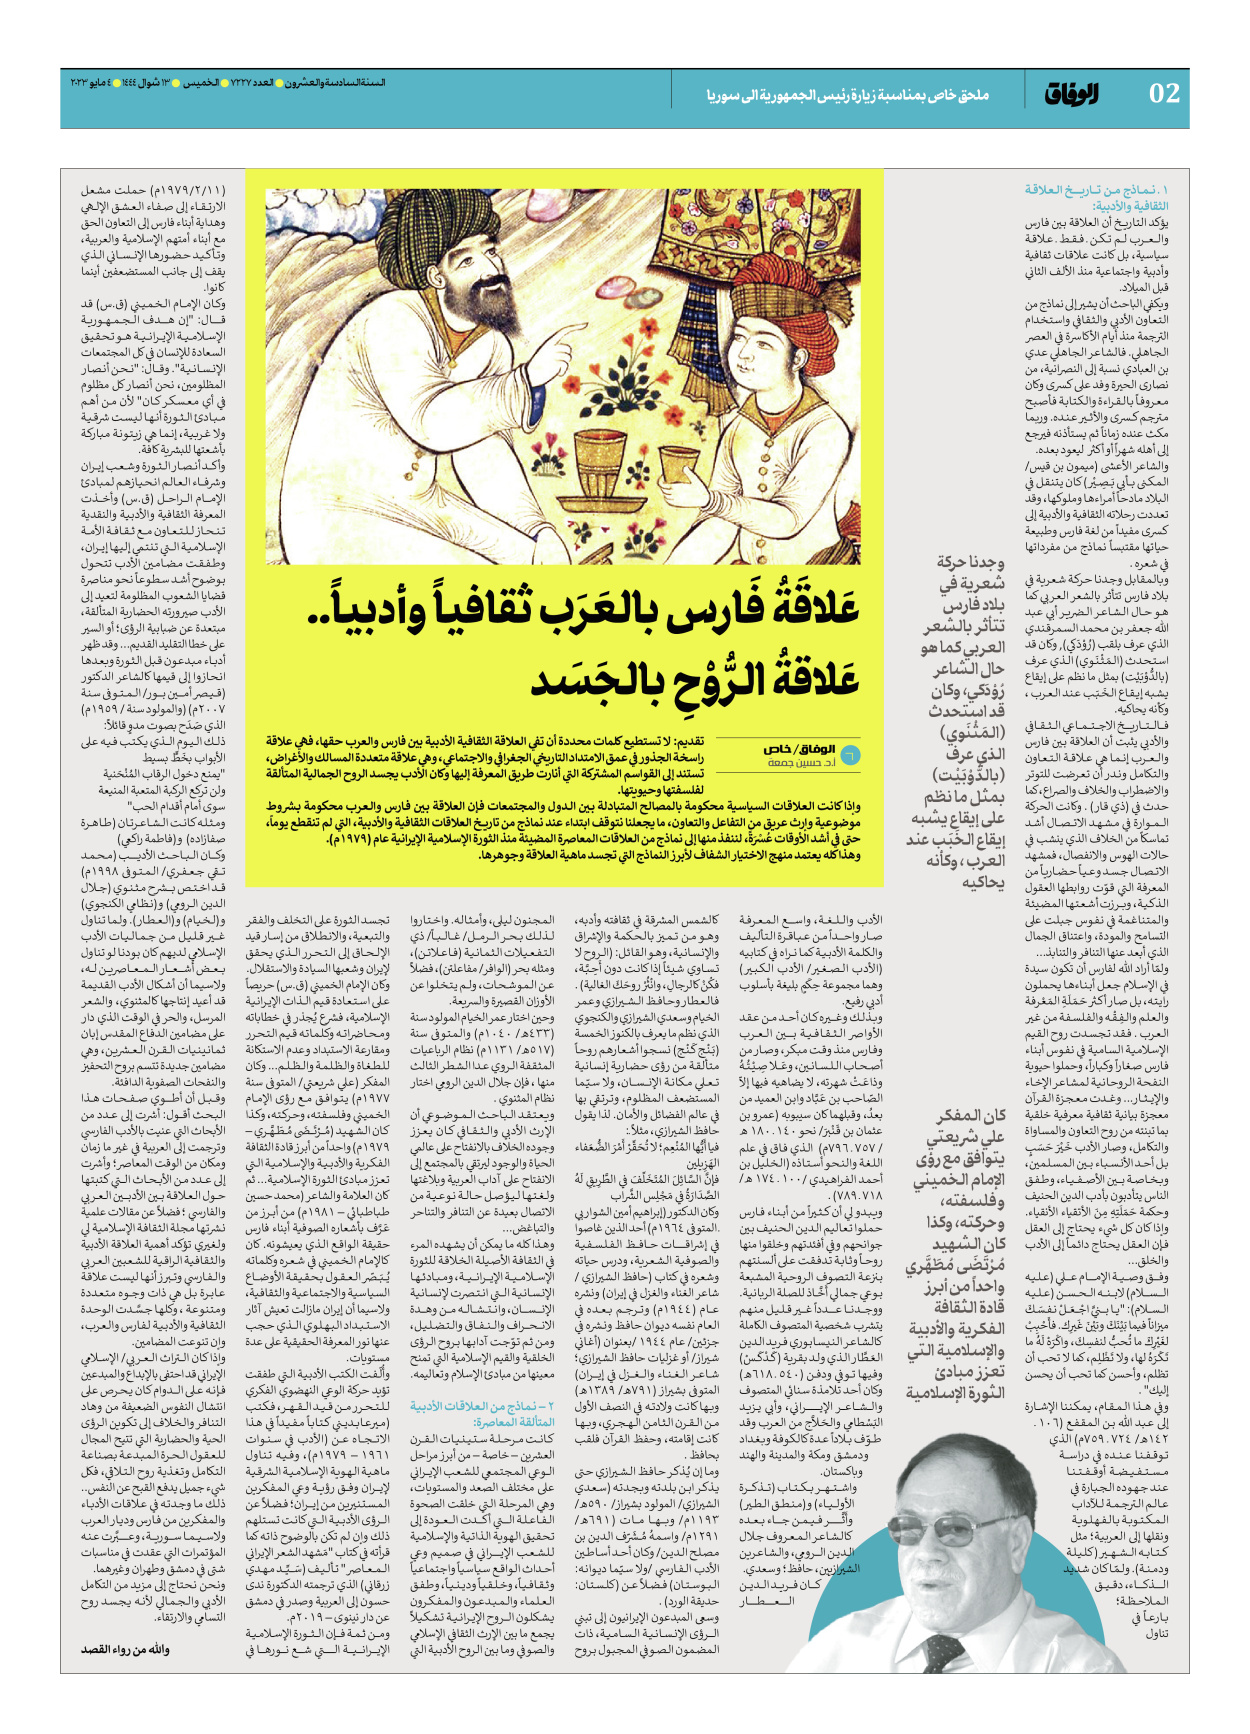 صحیفة ایران الدولیة الوفاق - ملحق بمناسبة زيارة رئيس الجمهورية الى سوريا - ٠٤ مايو ٢٠٢٣ - الصفحة ۲